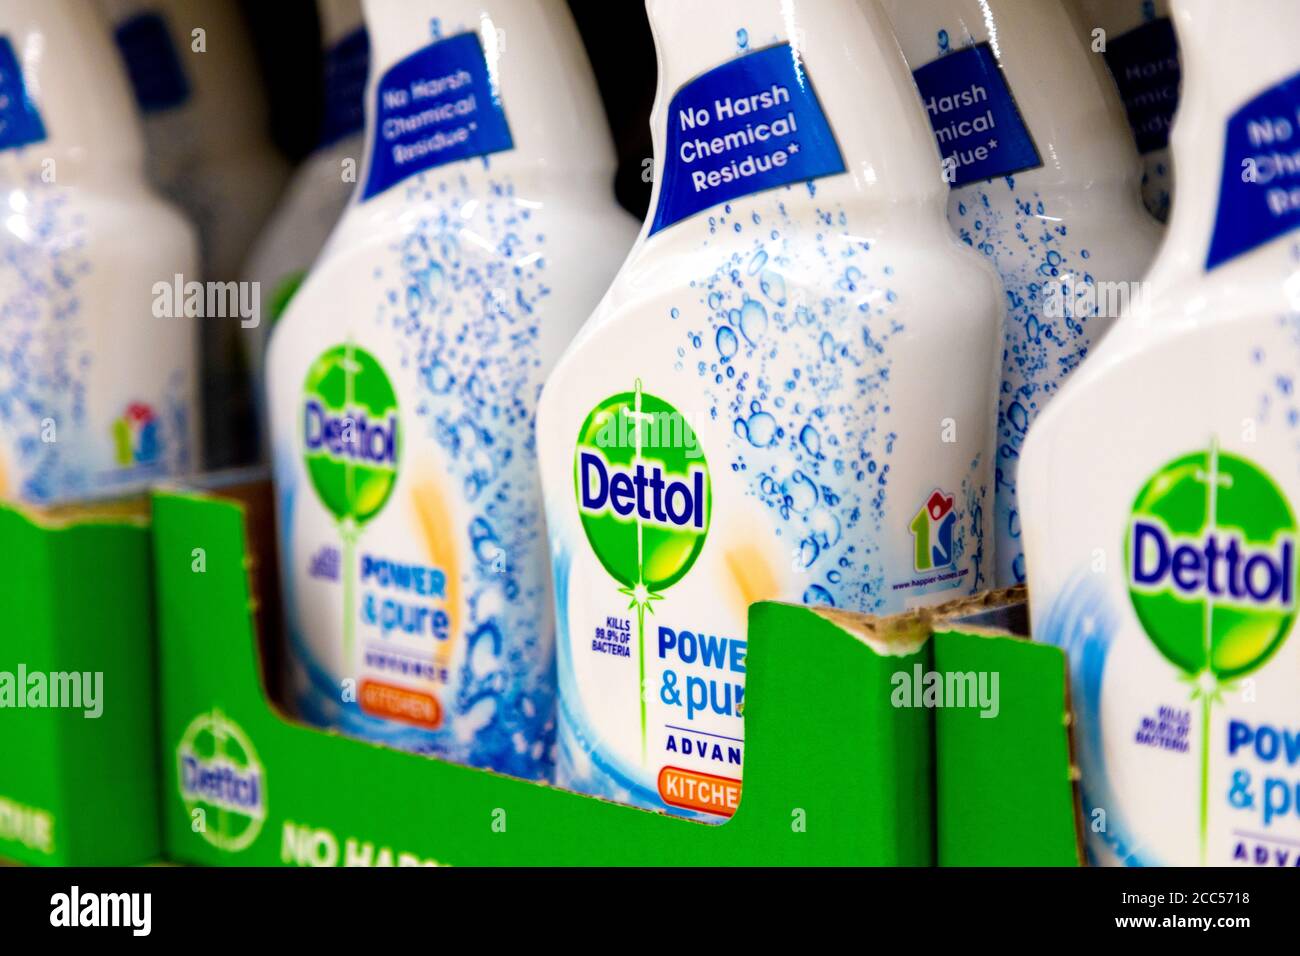 Bottiglie di detergente per cucina Dettol in un supermercato, Londra, Regno Unito Foto Stock